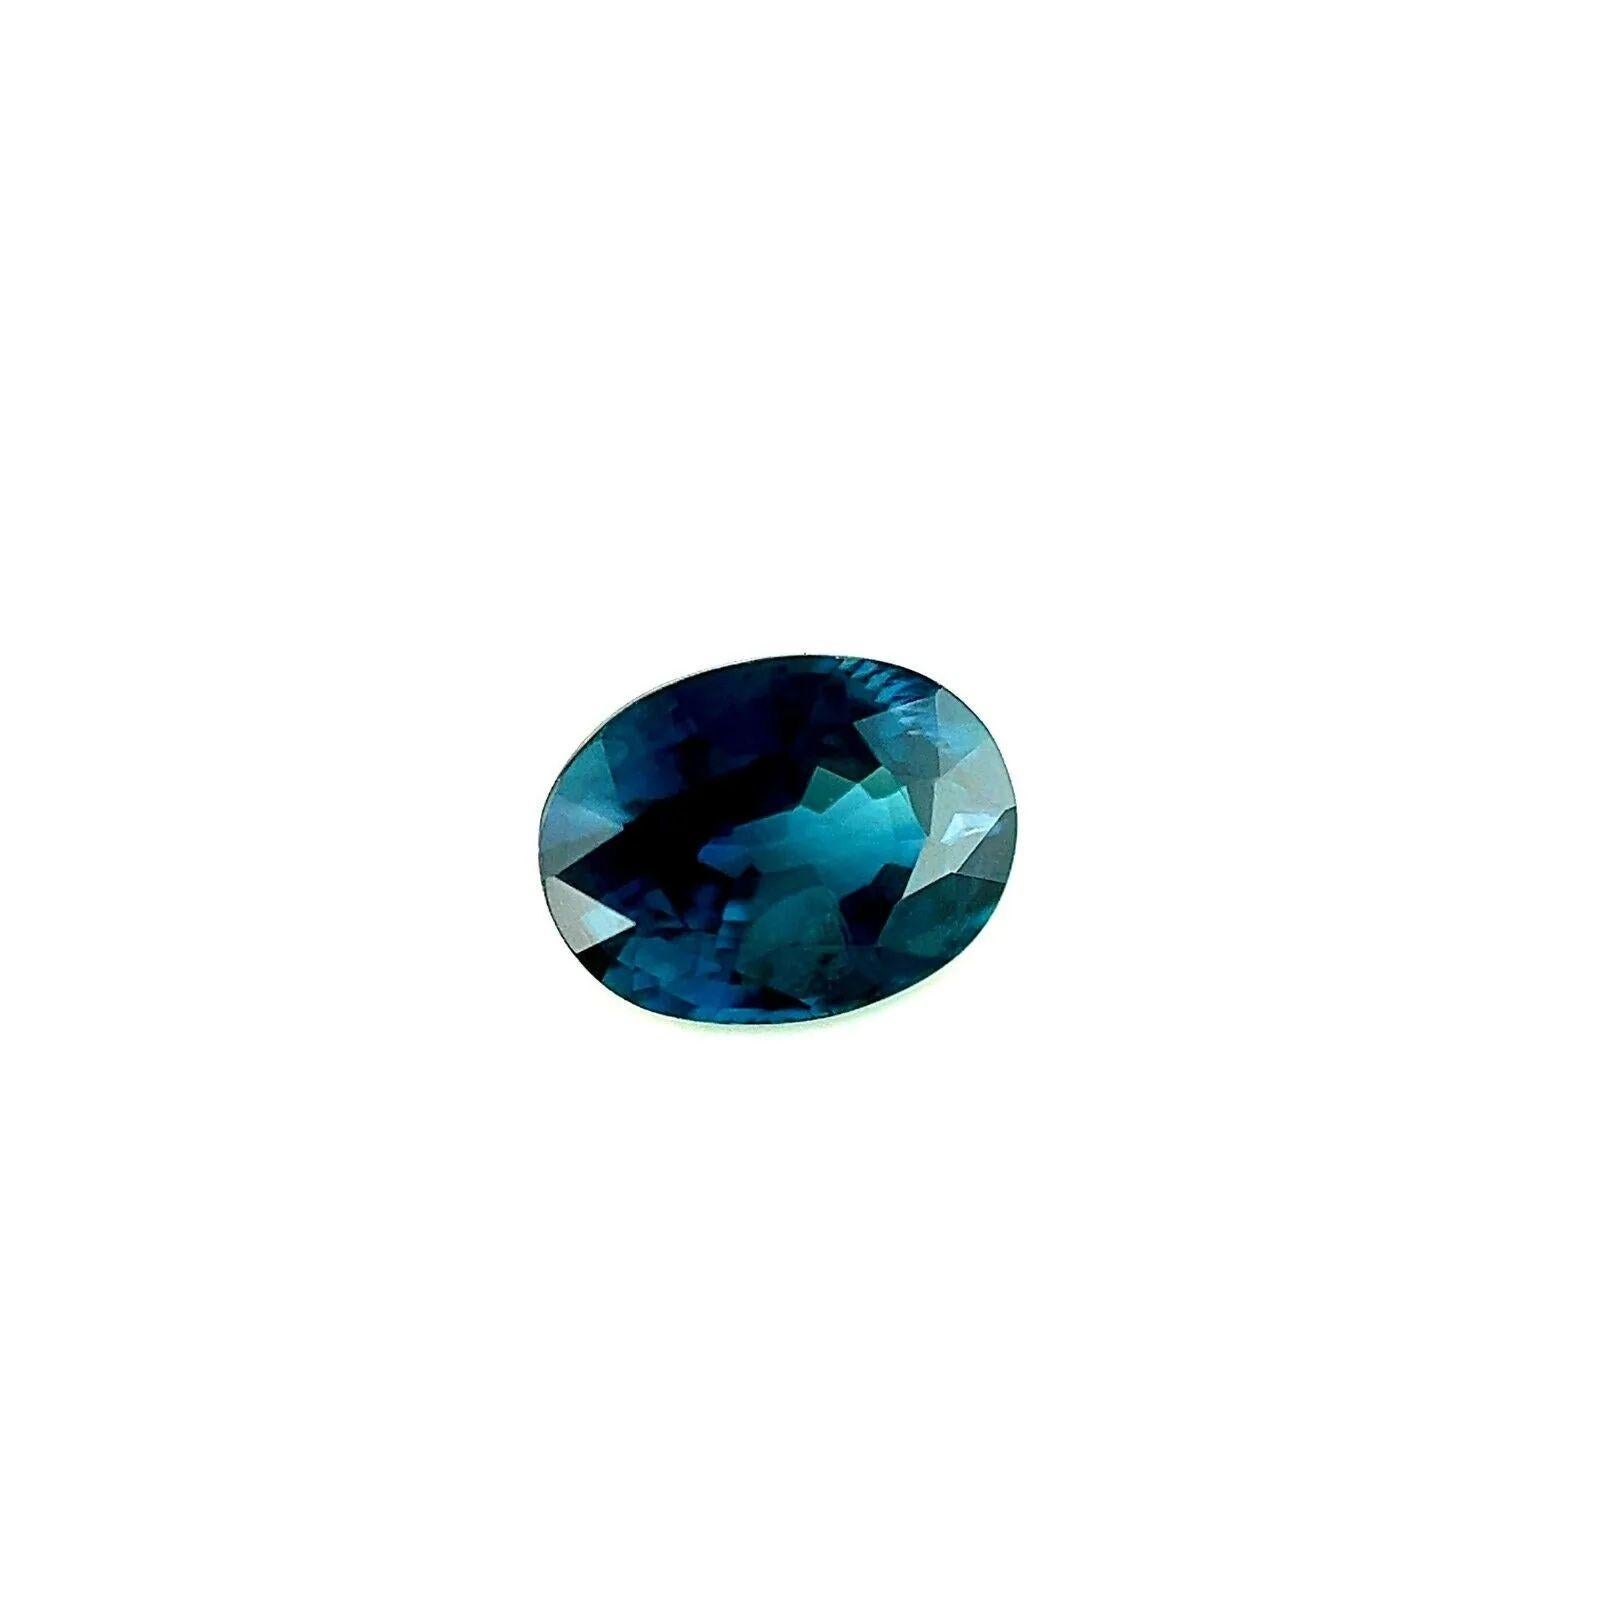 1.09ct AIG Certified Deep Rare Blue Sapphire Oval Cut 6.6x5mm Loose Gemstone (en anglais)

Gemme saphir bleu profond certifié AIG.
Saphir de 1,09 carat avec une belle couleur bleu profond.
Entièrement certifiée par AIG confirmant que la pierre est